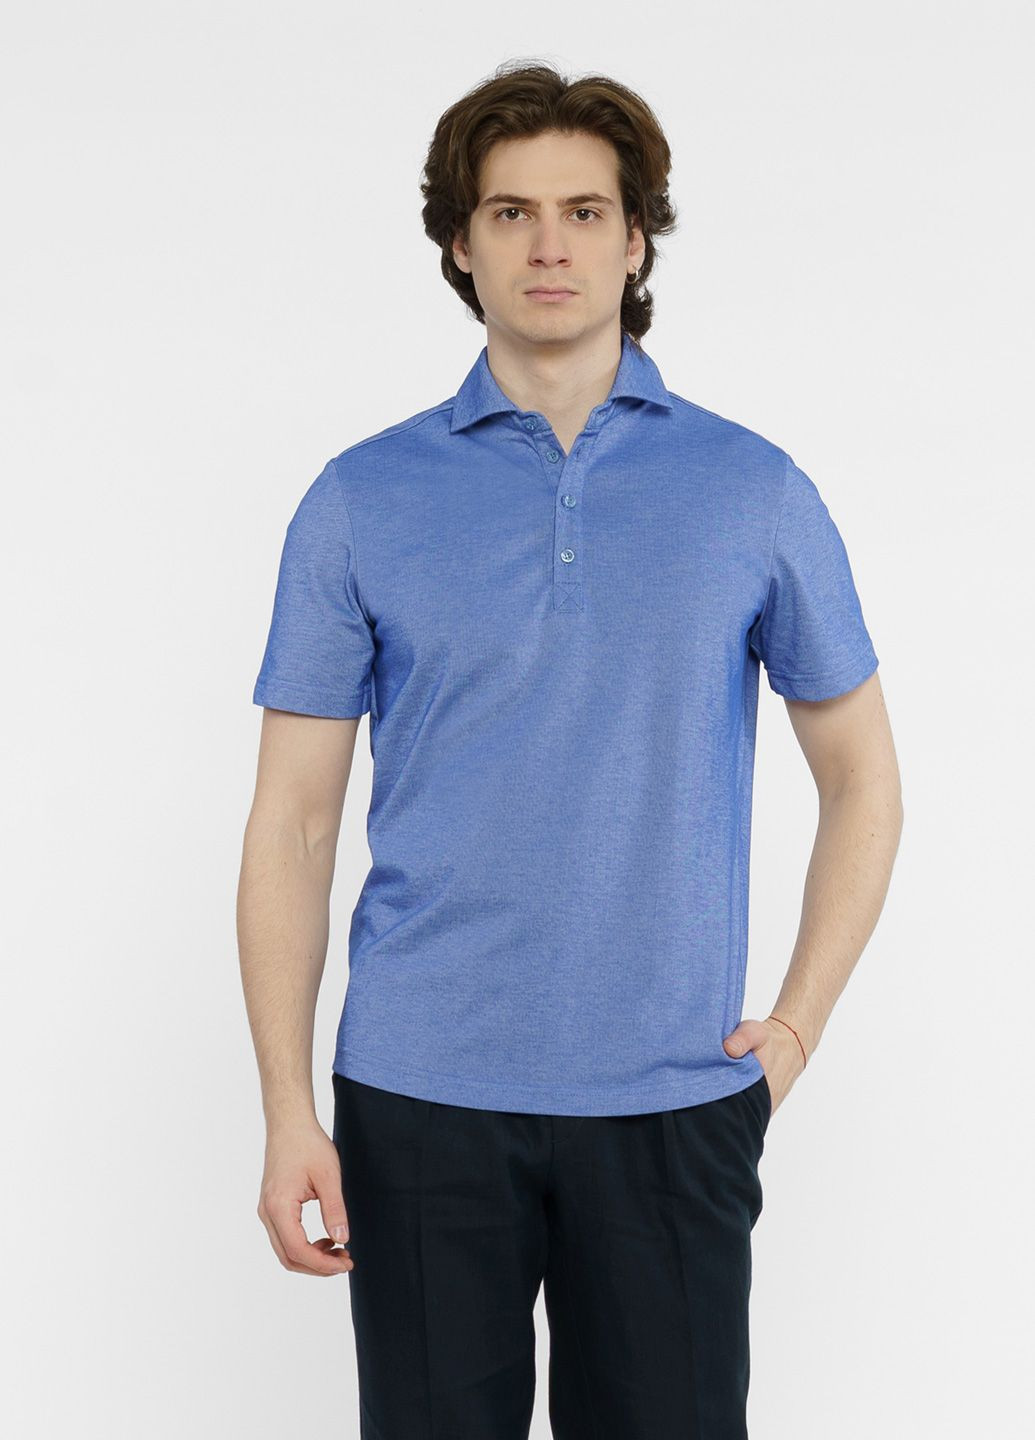 Синяя футболка-поло мужское синее для мужчин Arber однотонная